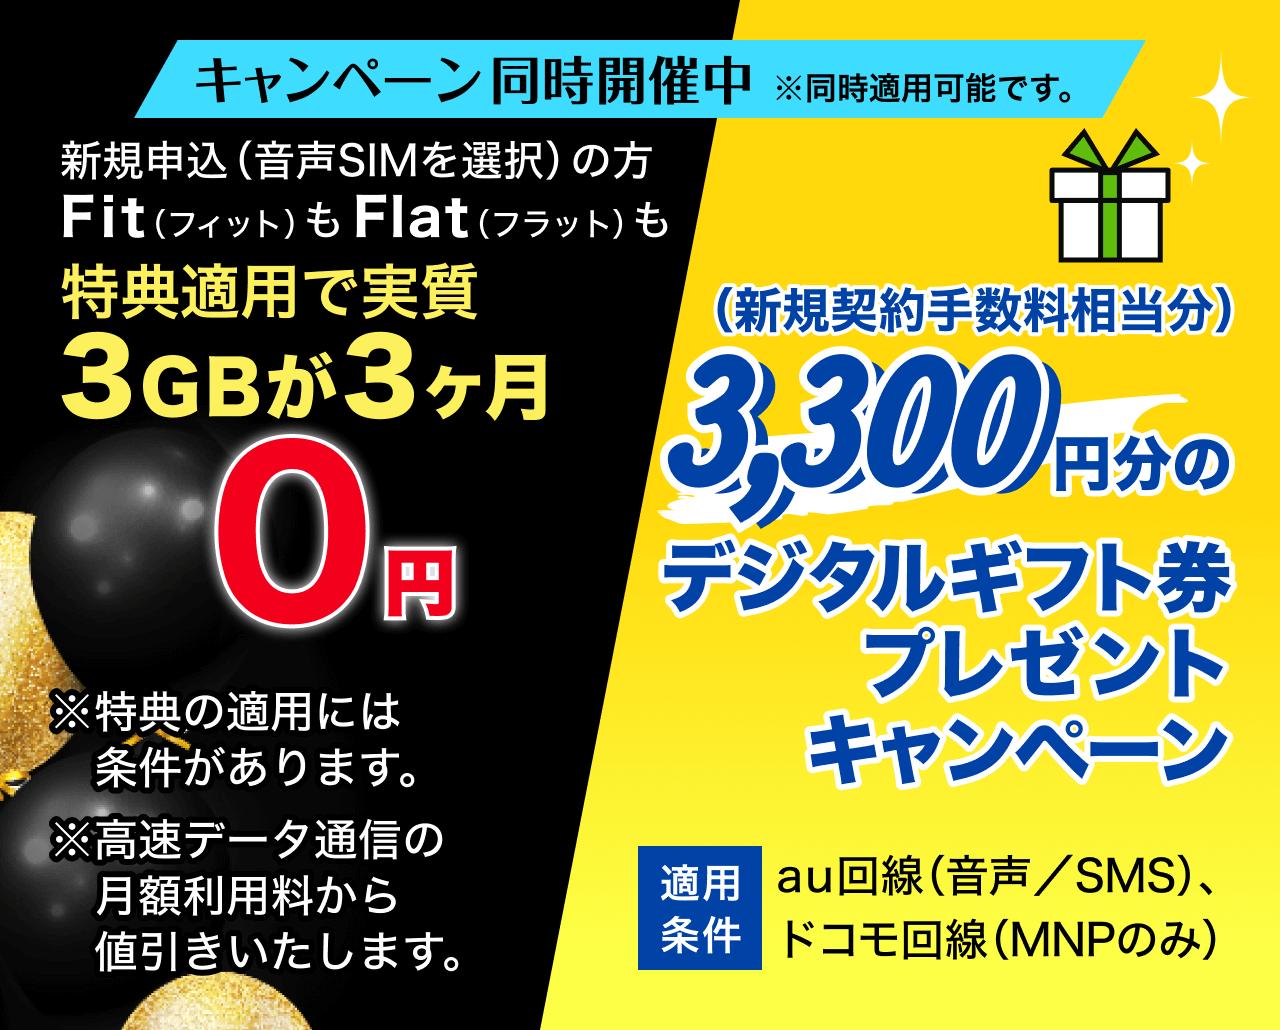 キャンペーン同時開催中！ 3,300円分のデジタルギフト券プレゼントキャンペーン & Fit(フィット) もFlat(フラット) も3GBが3ヶ月（実質）0円キャンペーン